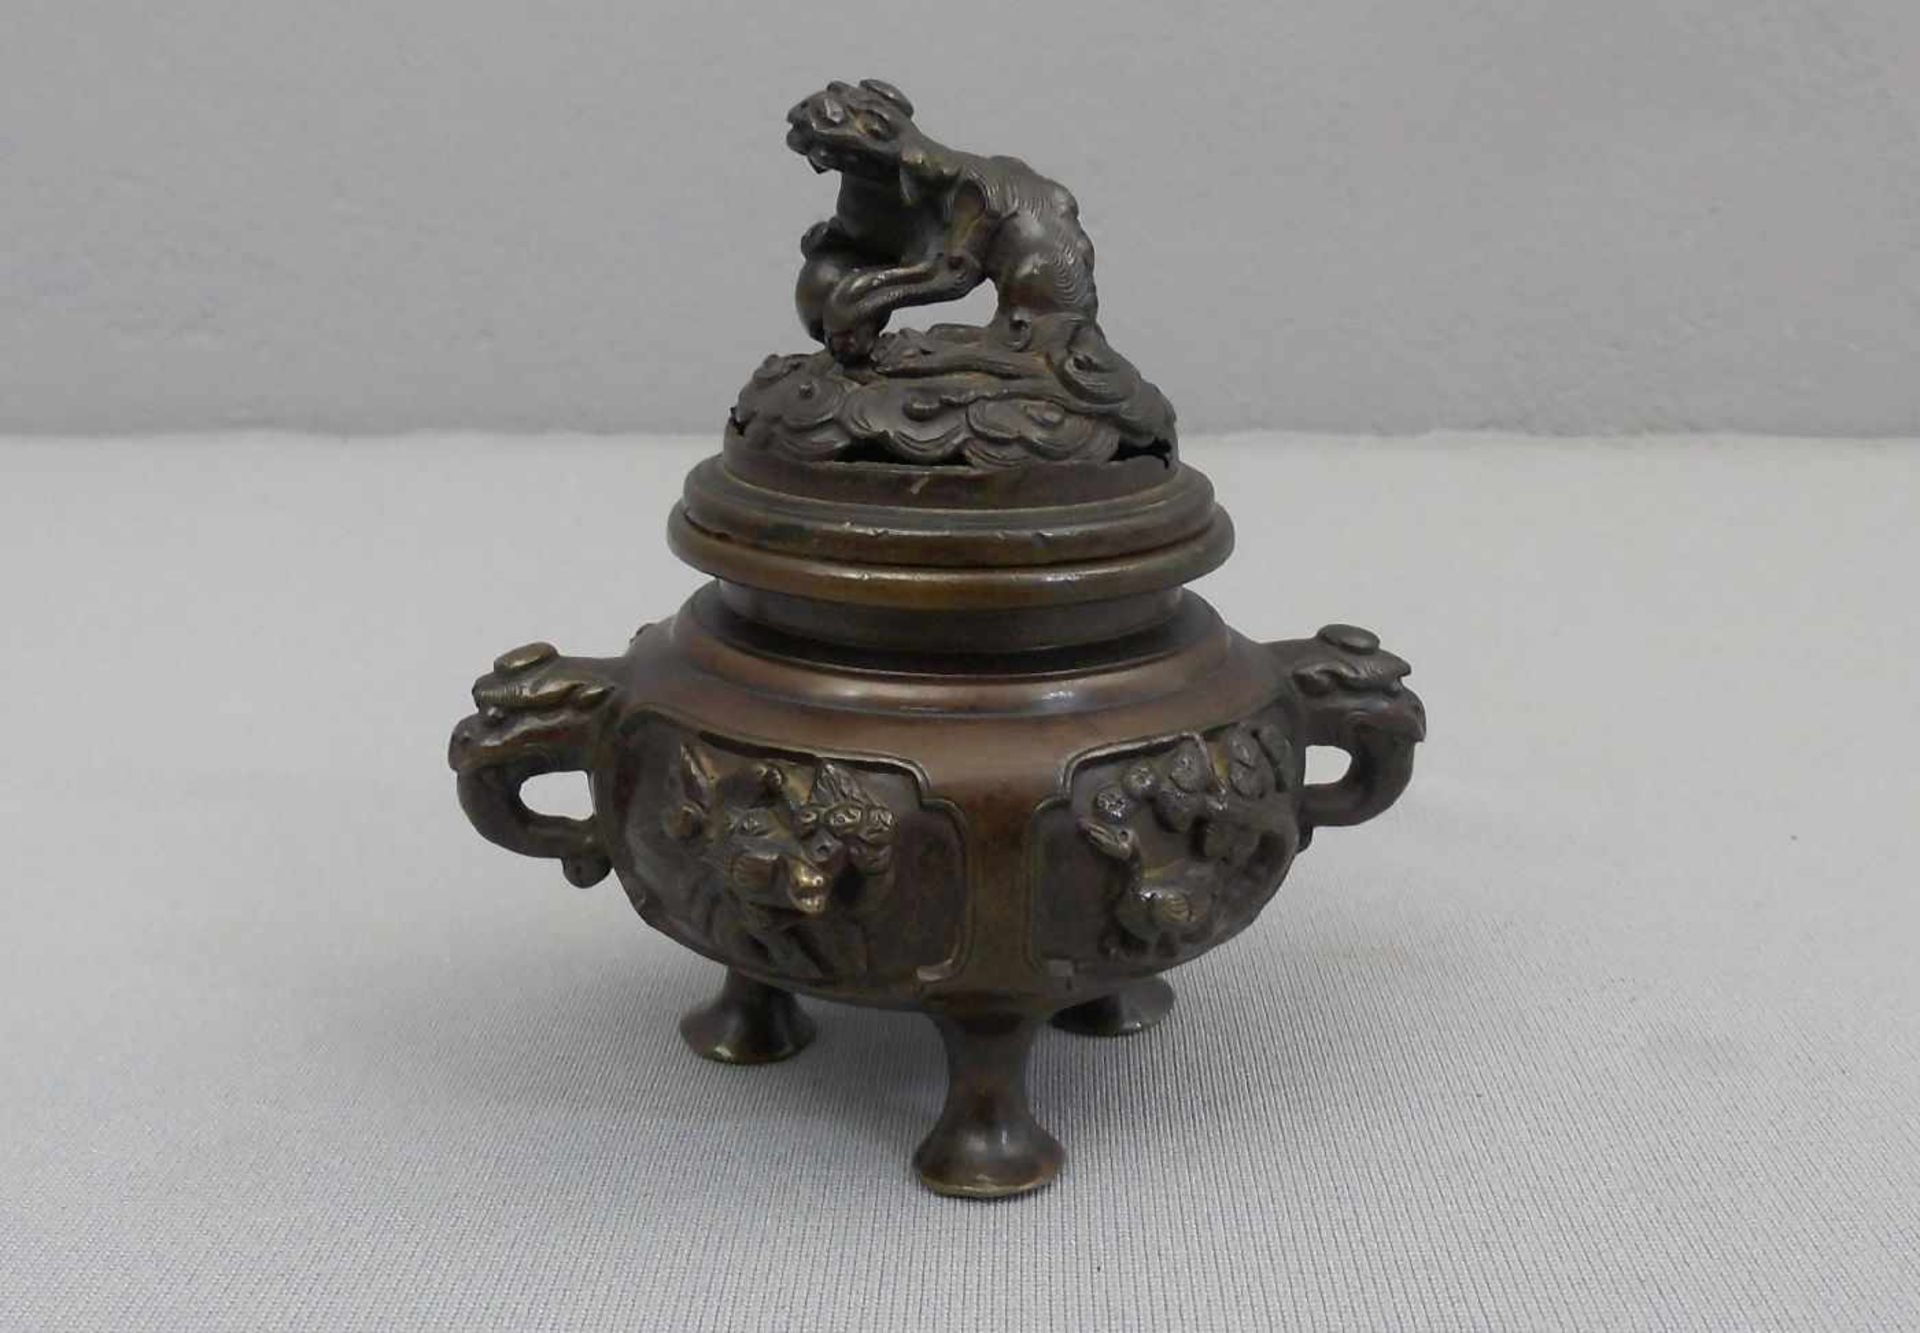 KORO / RÄUCHERGEFÄSS, Bronze, China (ungemarkt). Gebauchte Form mit eingezogener Schulter, kurzem